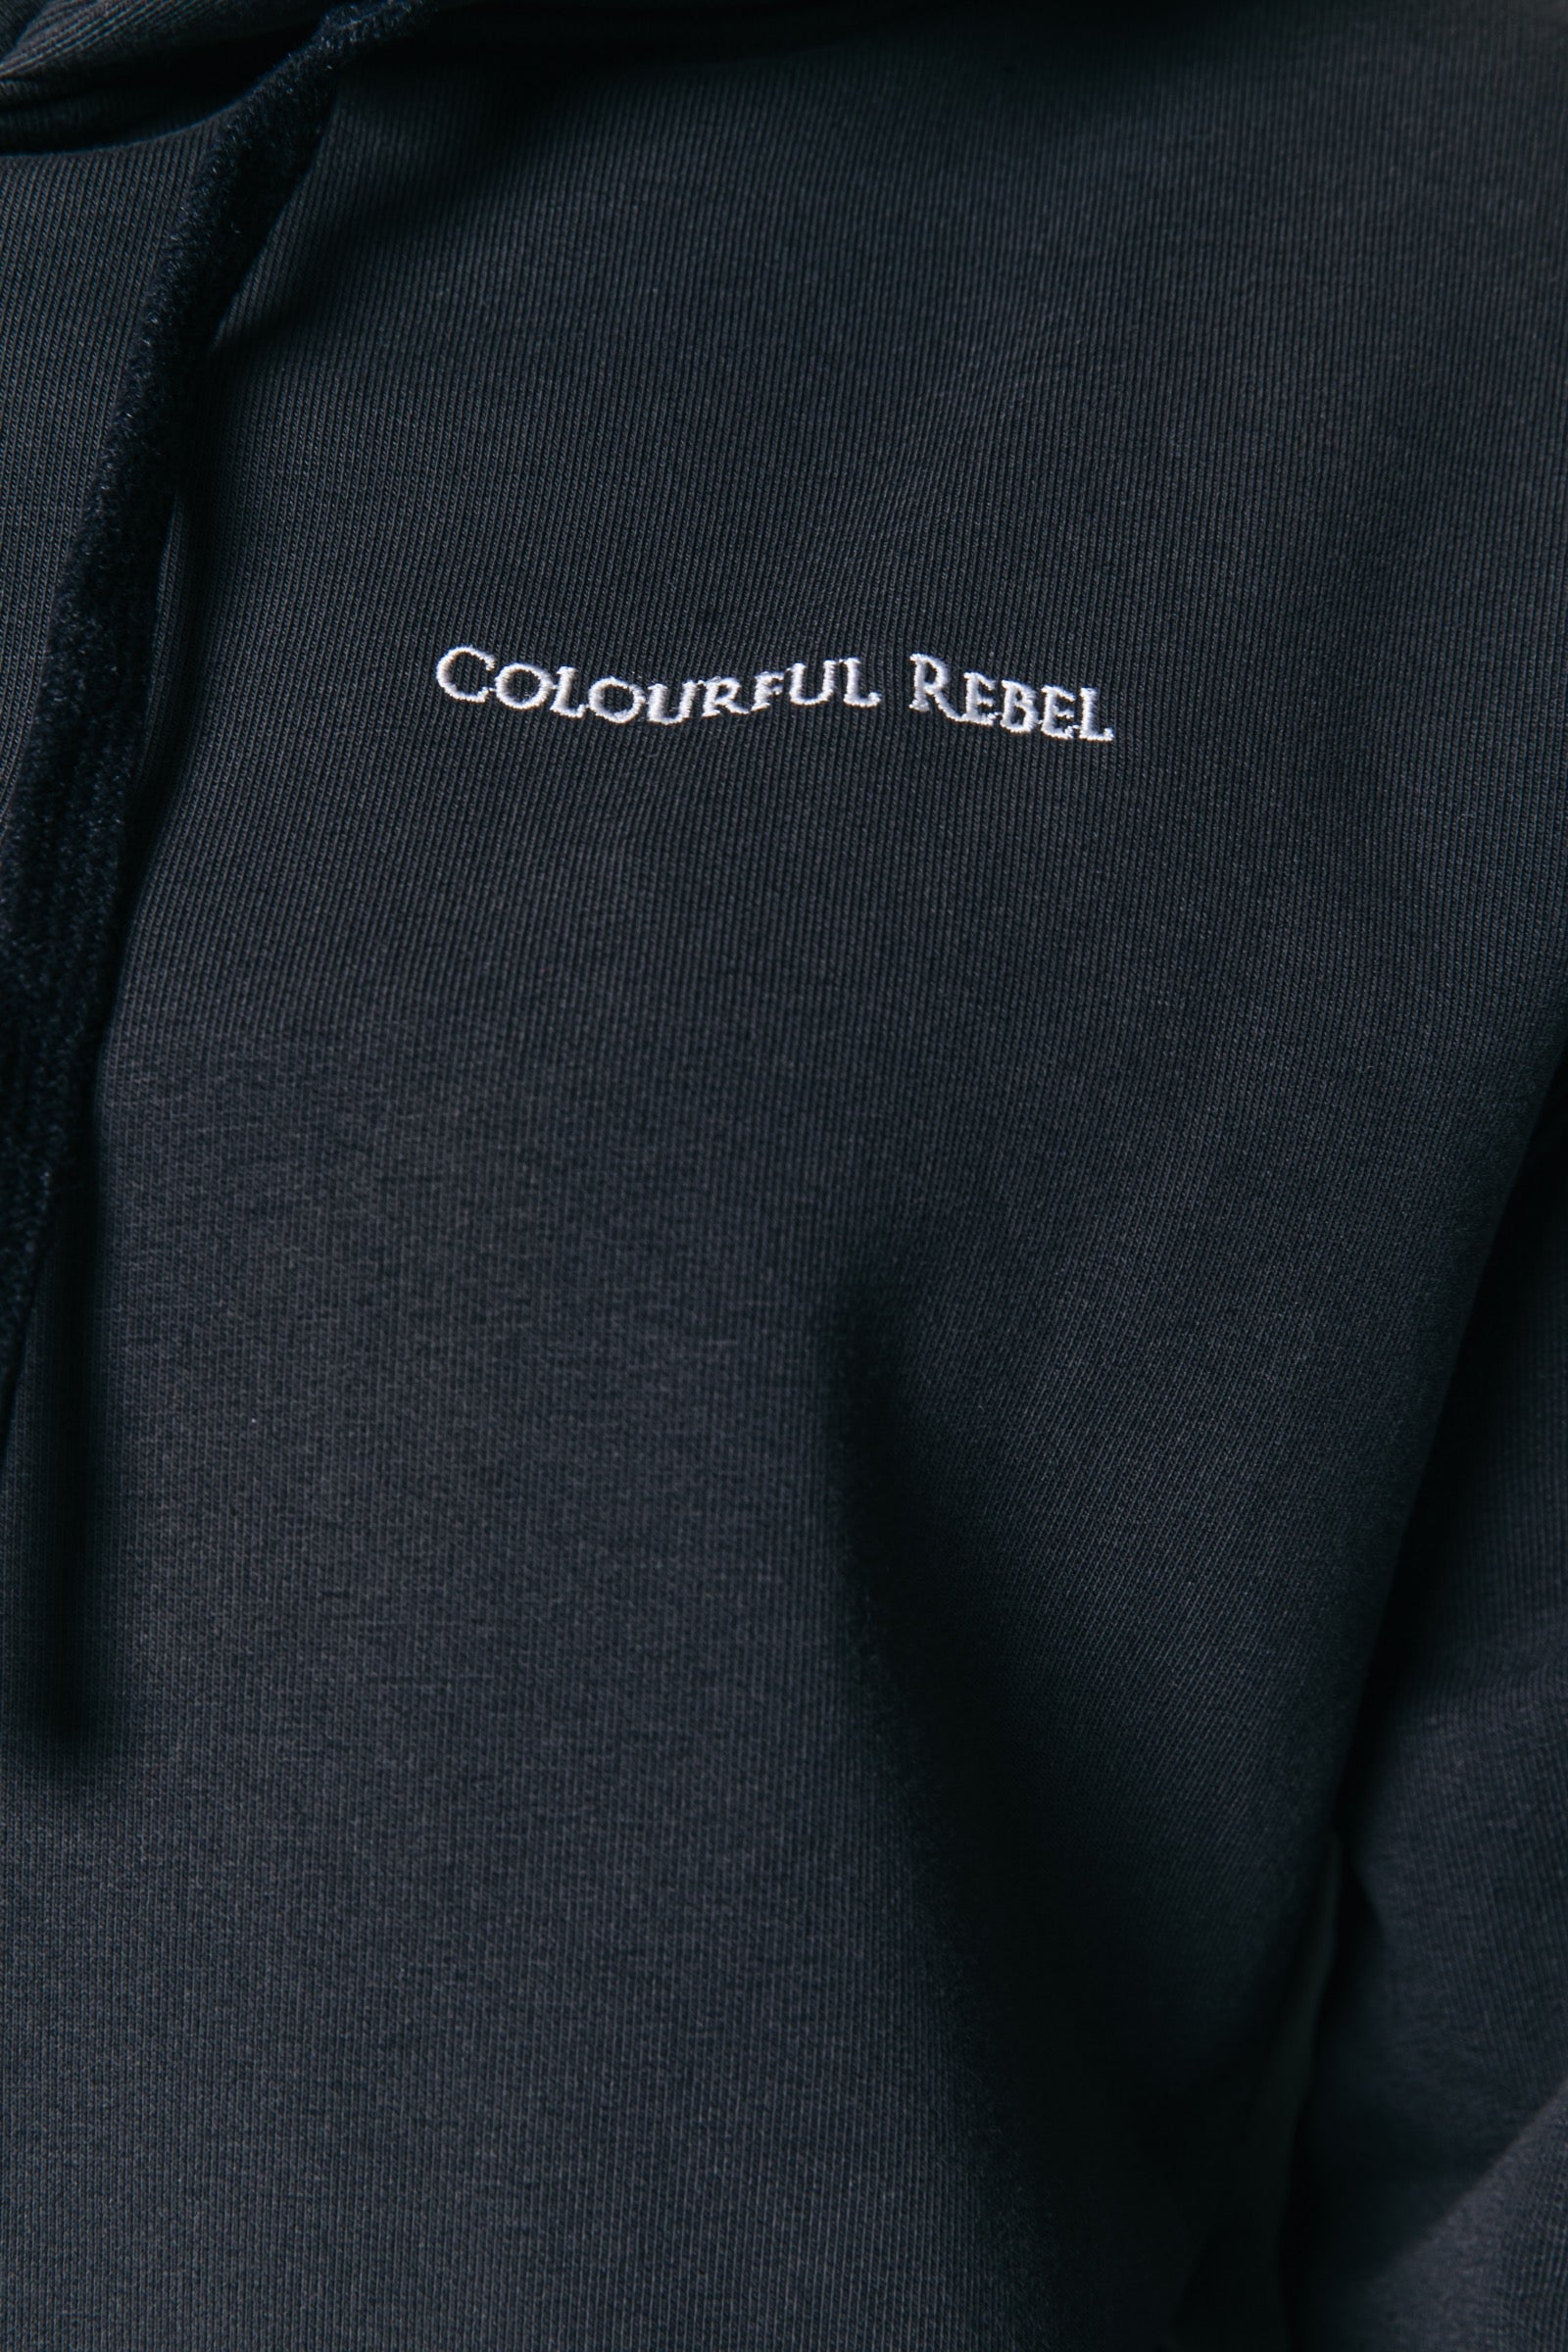 Rebelation hoodie - pirate black